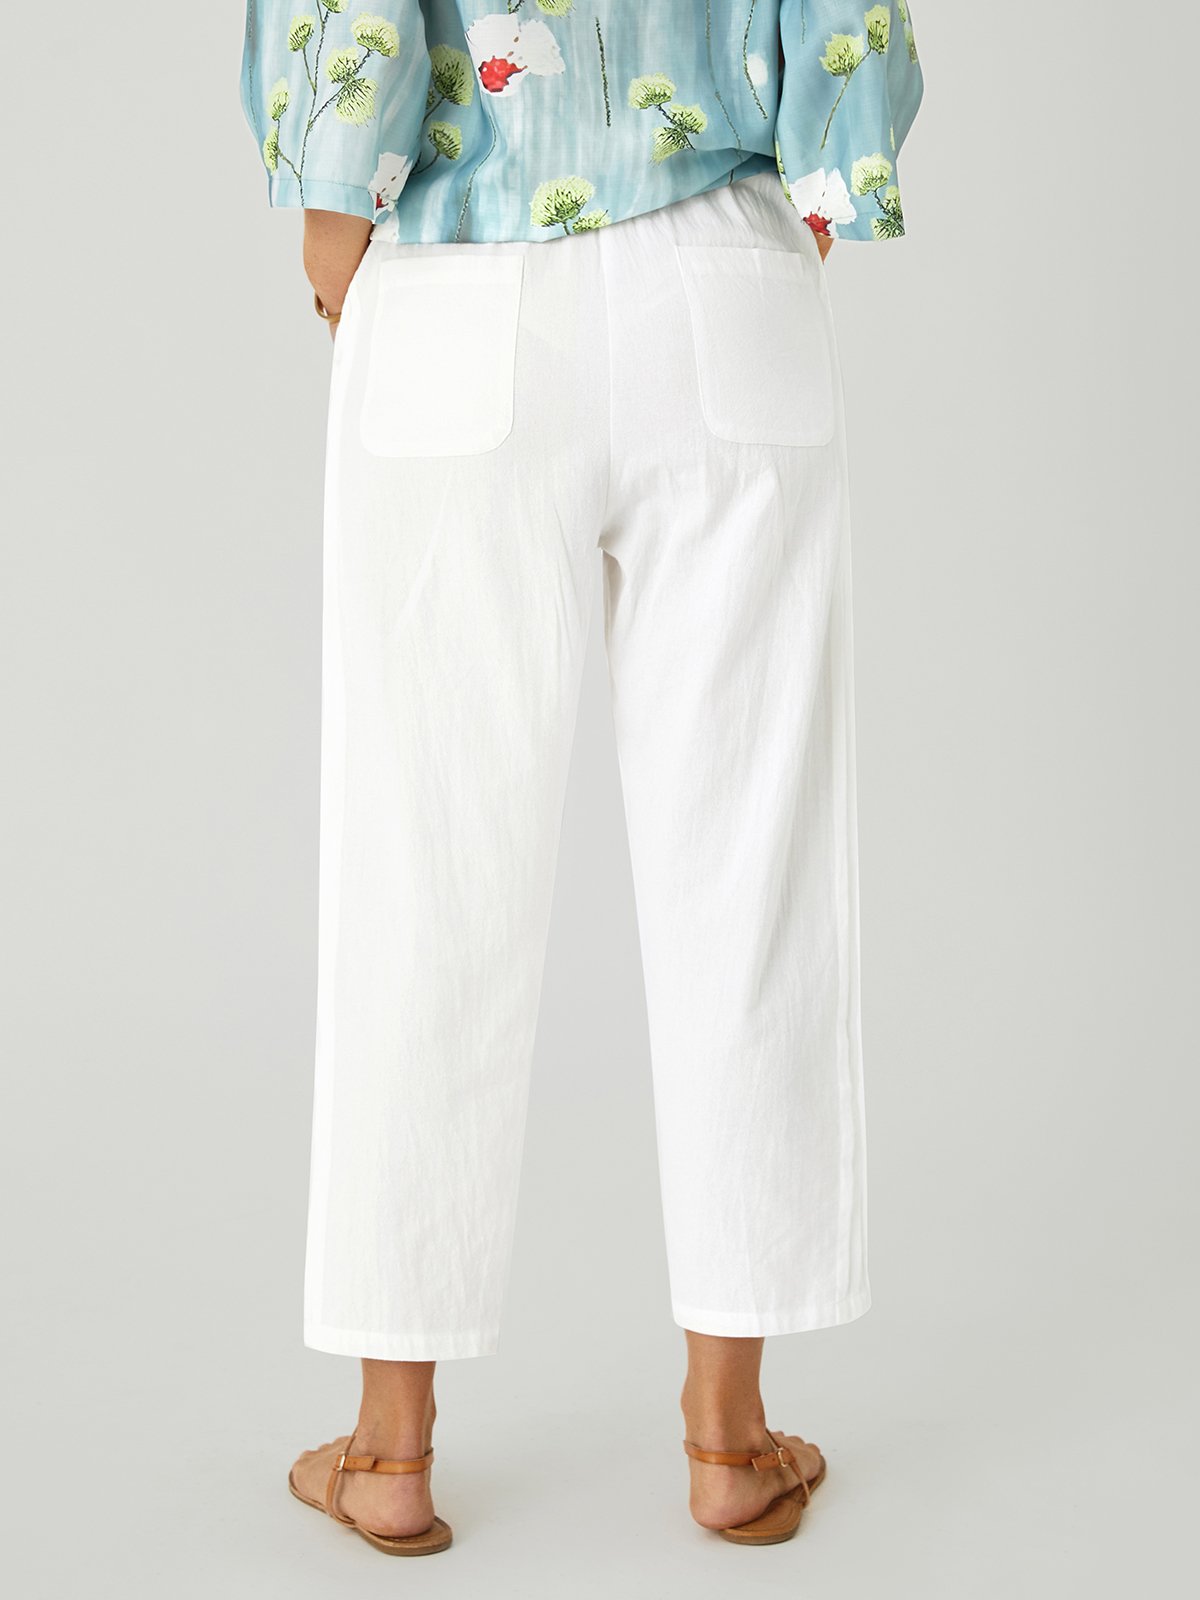 Women's Cotton Lace Pocket Casual Pants